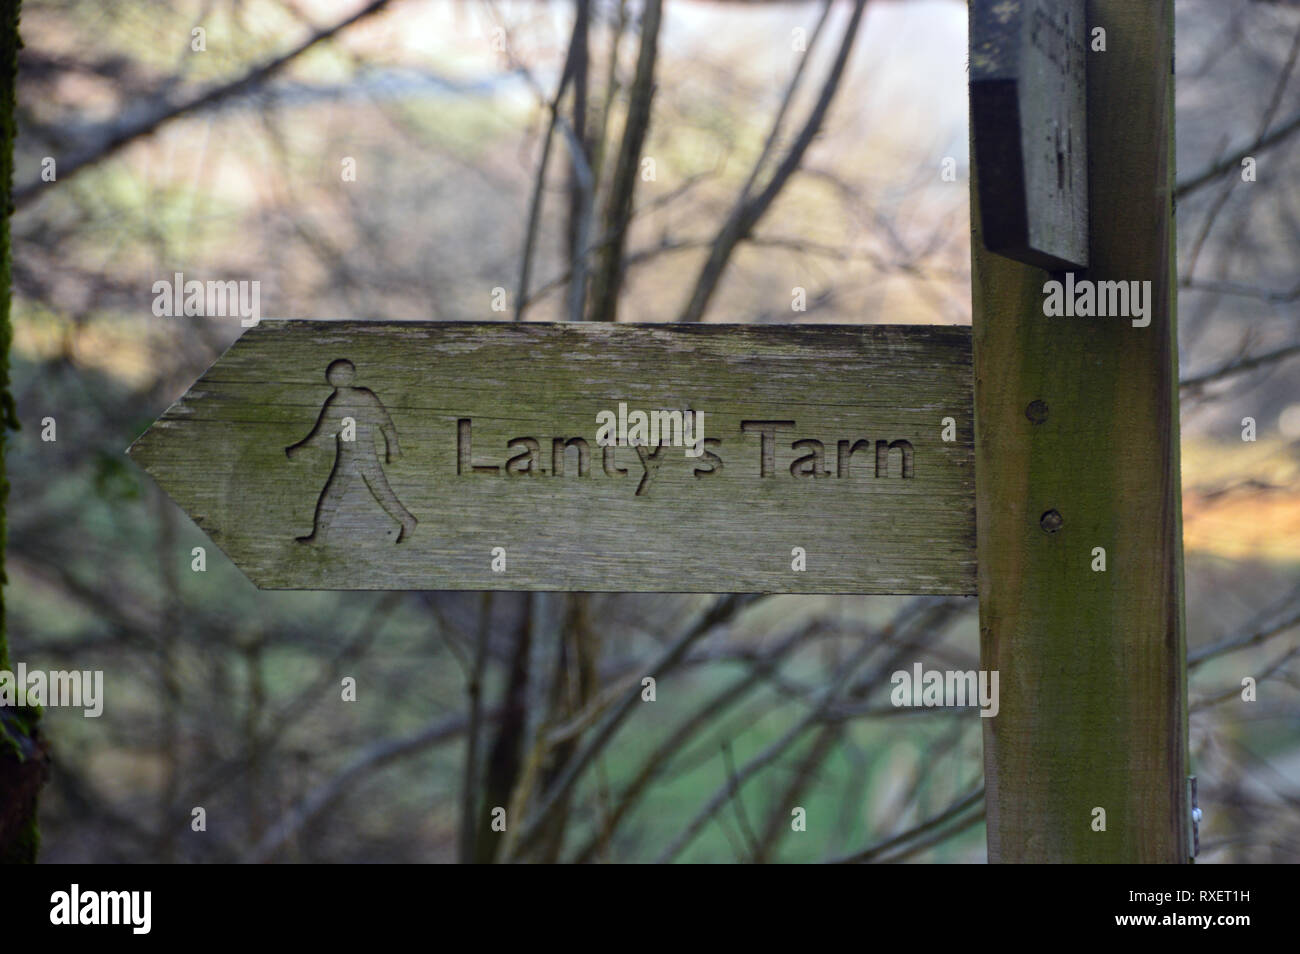 Panneau en bois à Lanty's Tarn sur la route à l'Birkhouse Wainwright Moor à Glenridding, Parc National de Lake District, Cumbria, England, UK. Banque D'Images